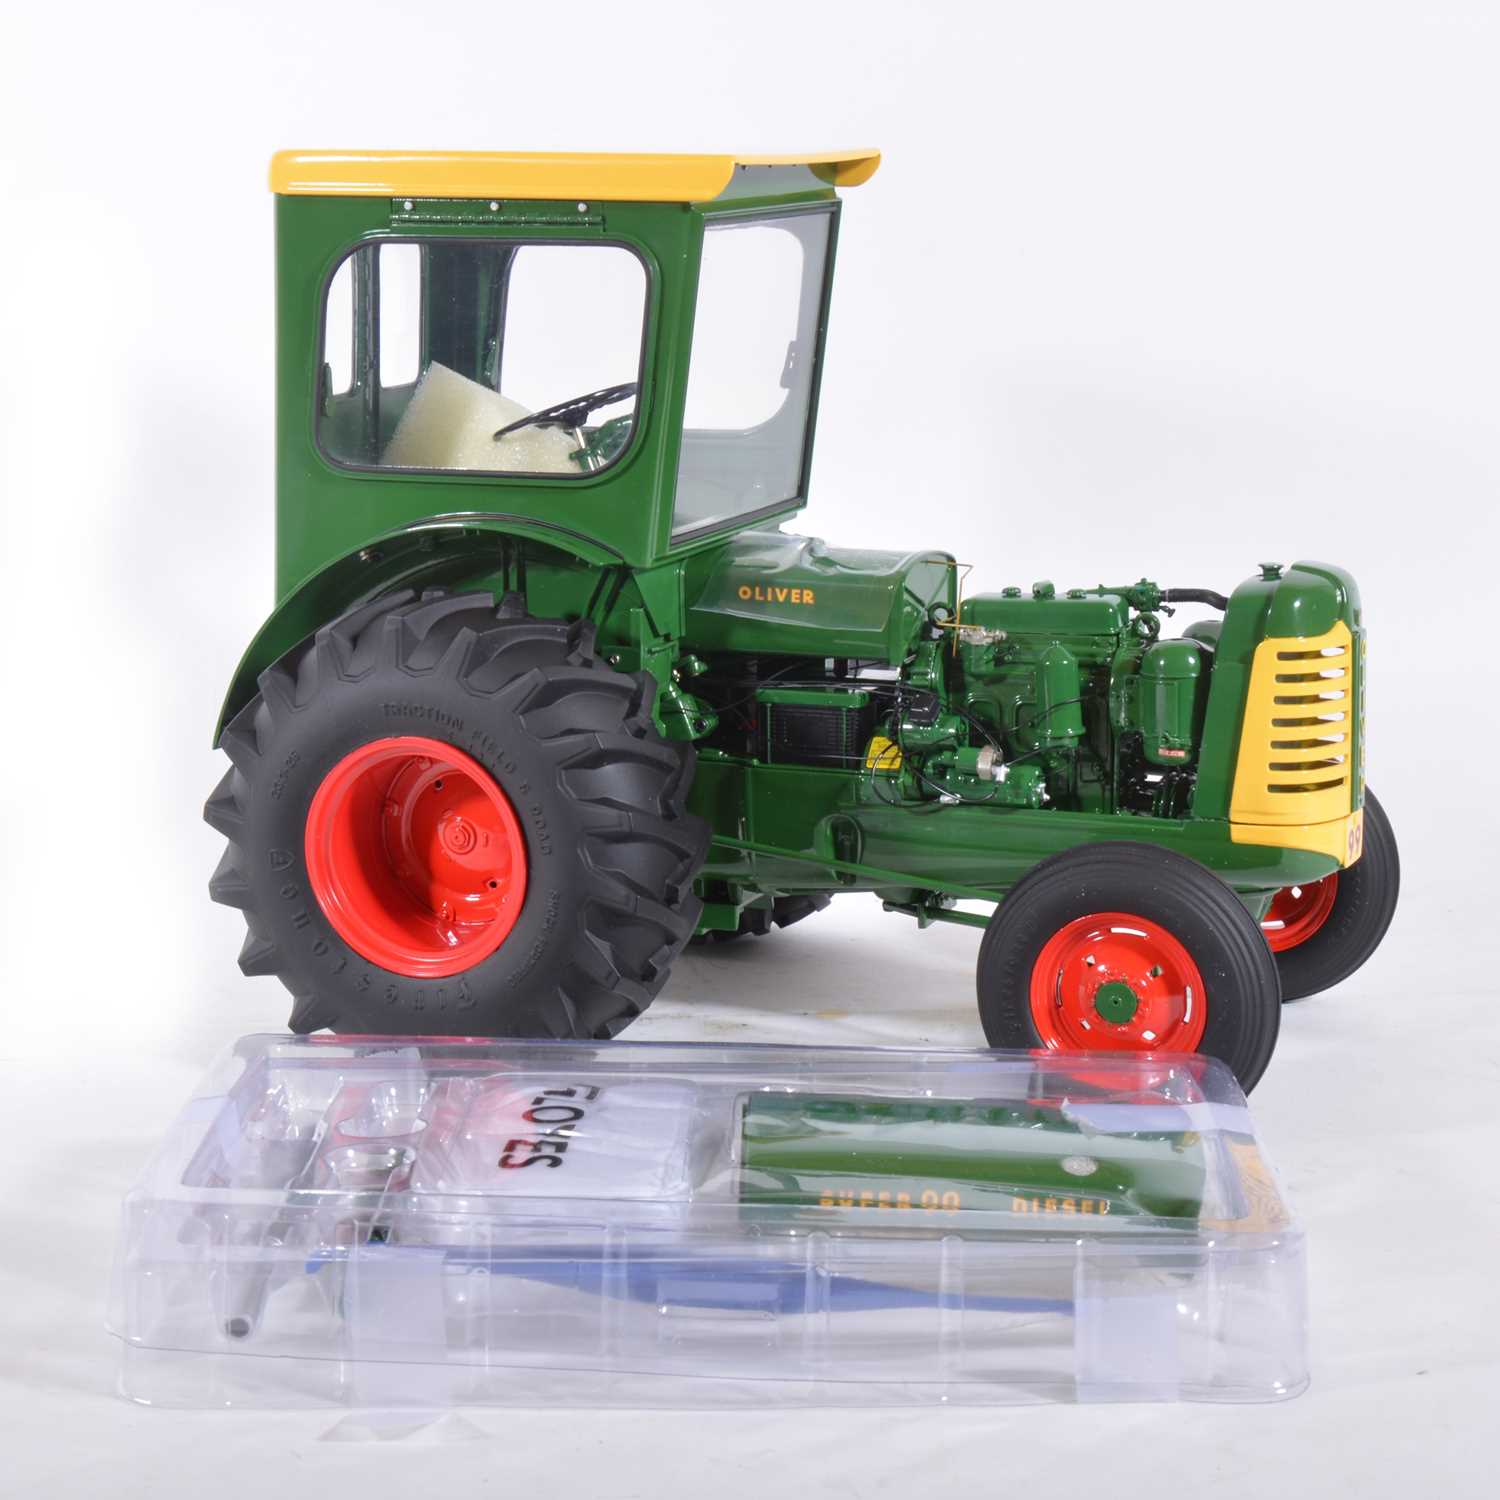 Lot 13 - Franklin Mint 1:12 scale mode tractor; Oliver Super 99 diesel